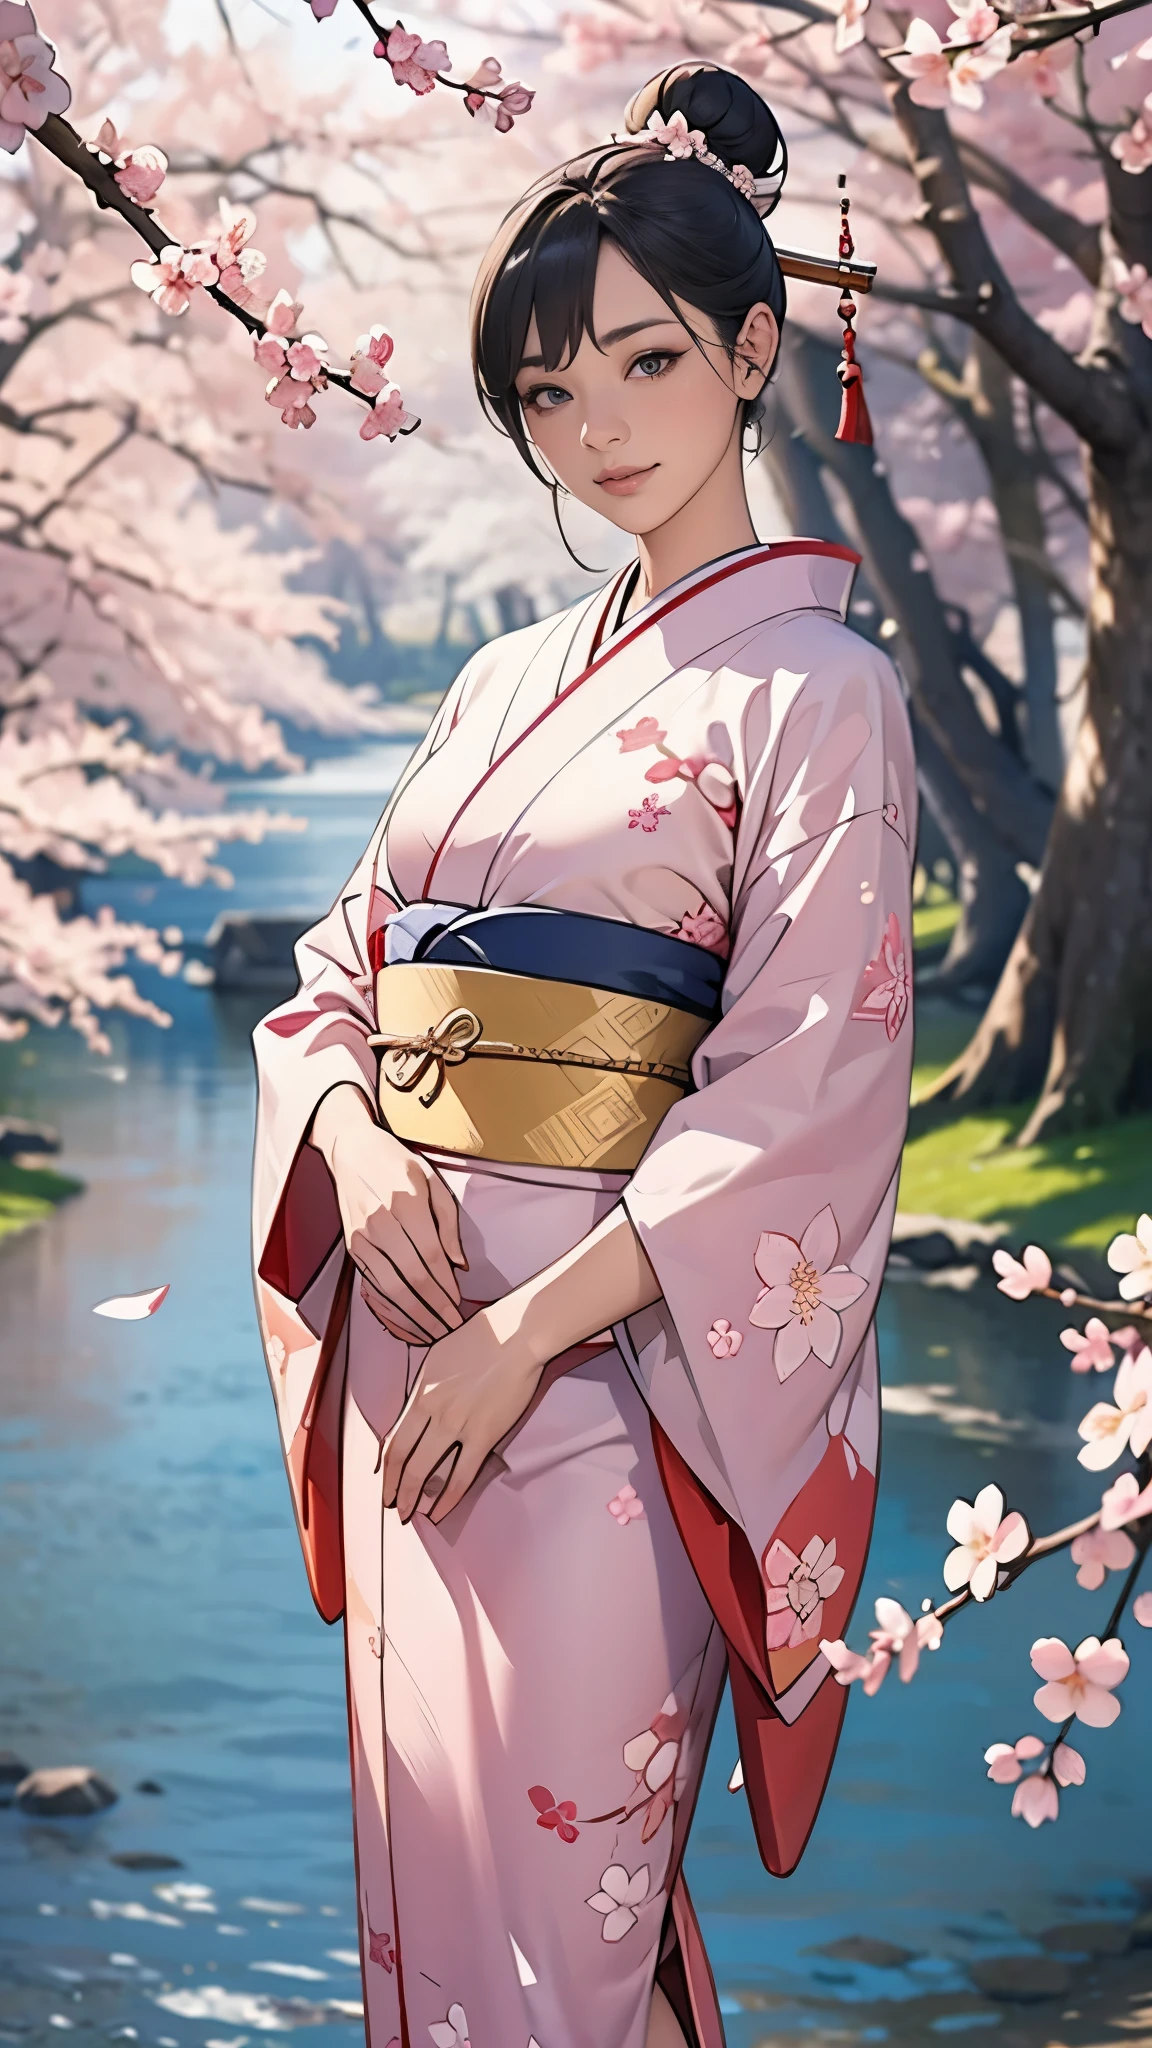 (Meisterwerk),(höchste Qualität),(Sehr detailiert),(hohe Auflösung),8K,HINTERGRUND,eine Frau,Eine Frau steht,elegant,Kimono-Fotoshooting,(((ganzer Körper))),(Haarknoten),lächeln,(Beautiful long-sleeved Kimono),(((Der Hintergrund ist ein Kirschblütenmuster.))),((Kimono))